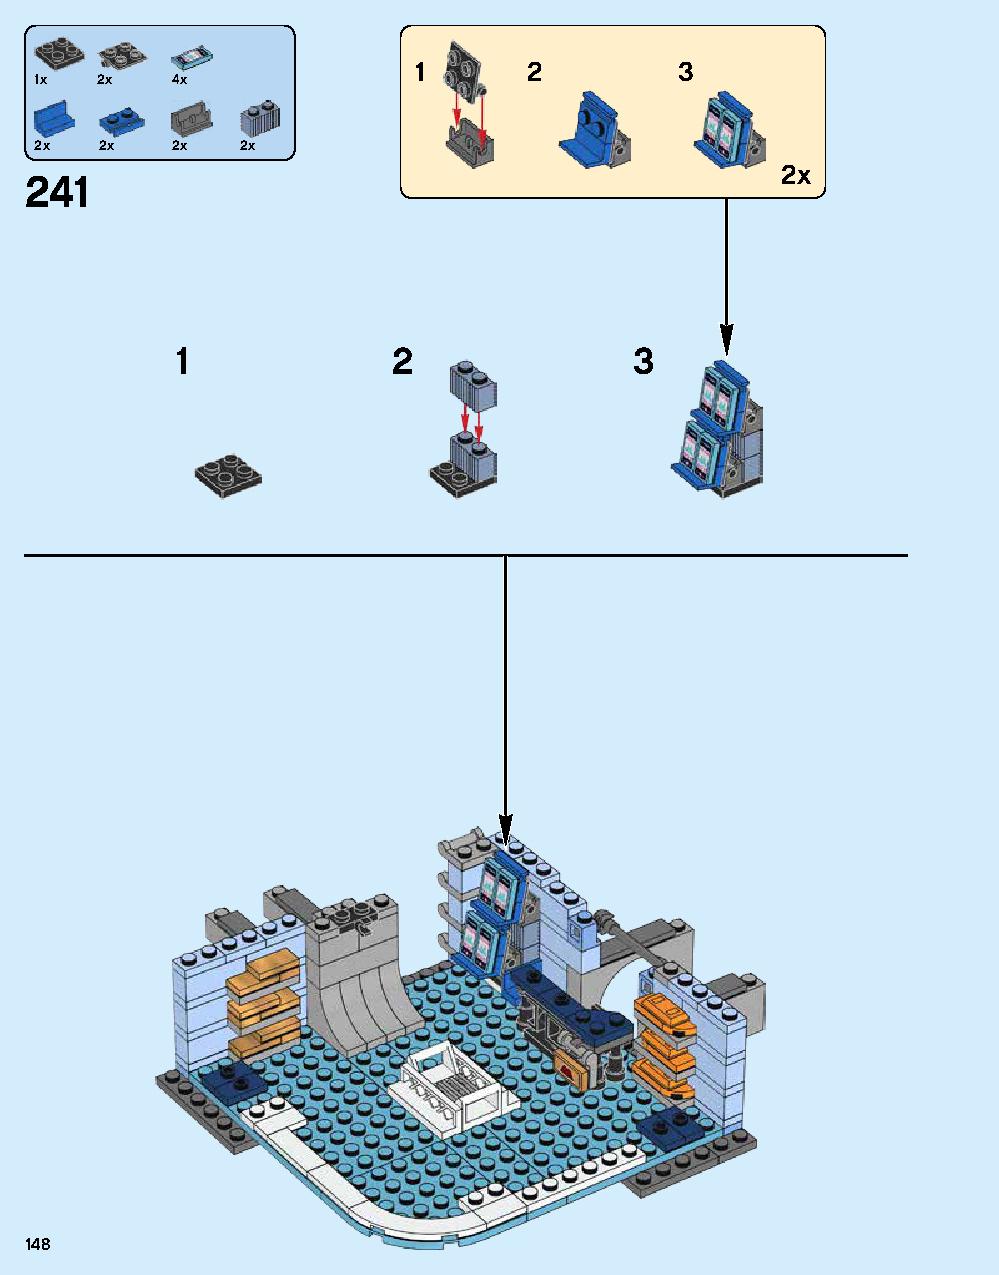 ニンジャゴー シティ 70620 レゴの商品情報 レゴの説明書・組立方法 148 page